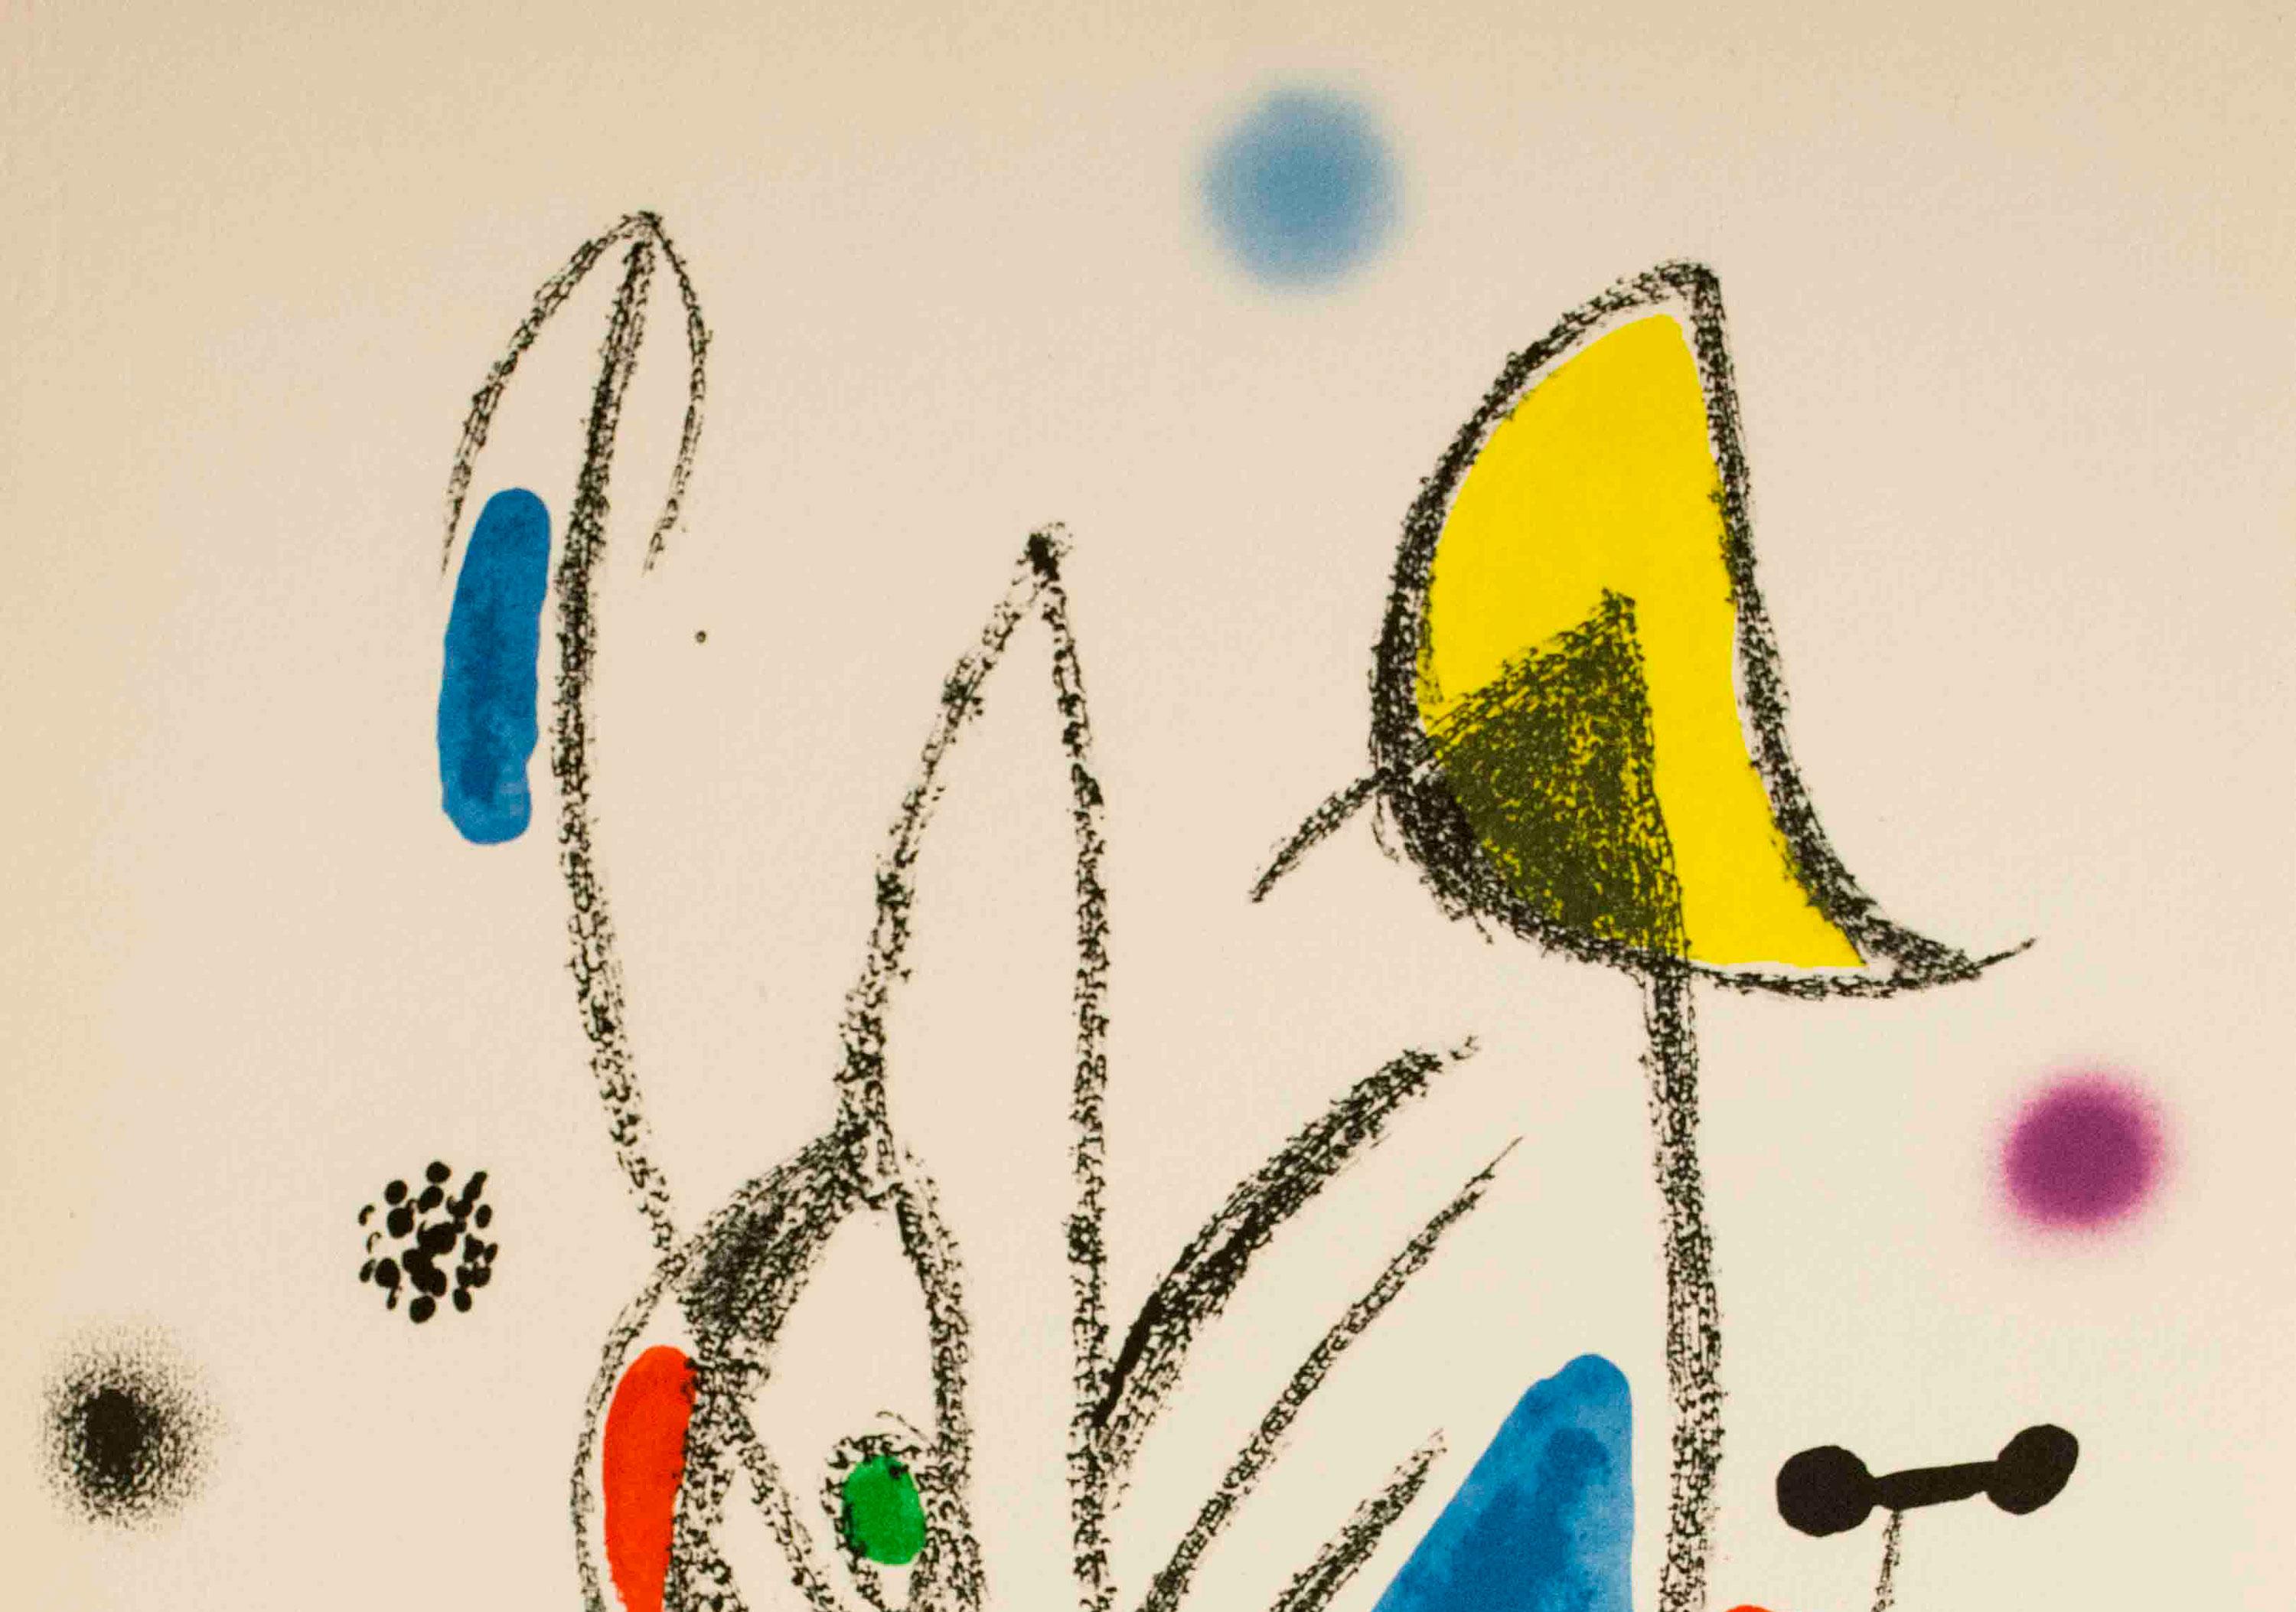 Maravillas con Variaciones Acrosticas en el jardin de Miro (Number 18) - Print by (after) Joan Miró